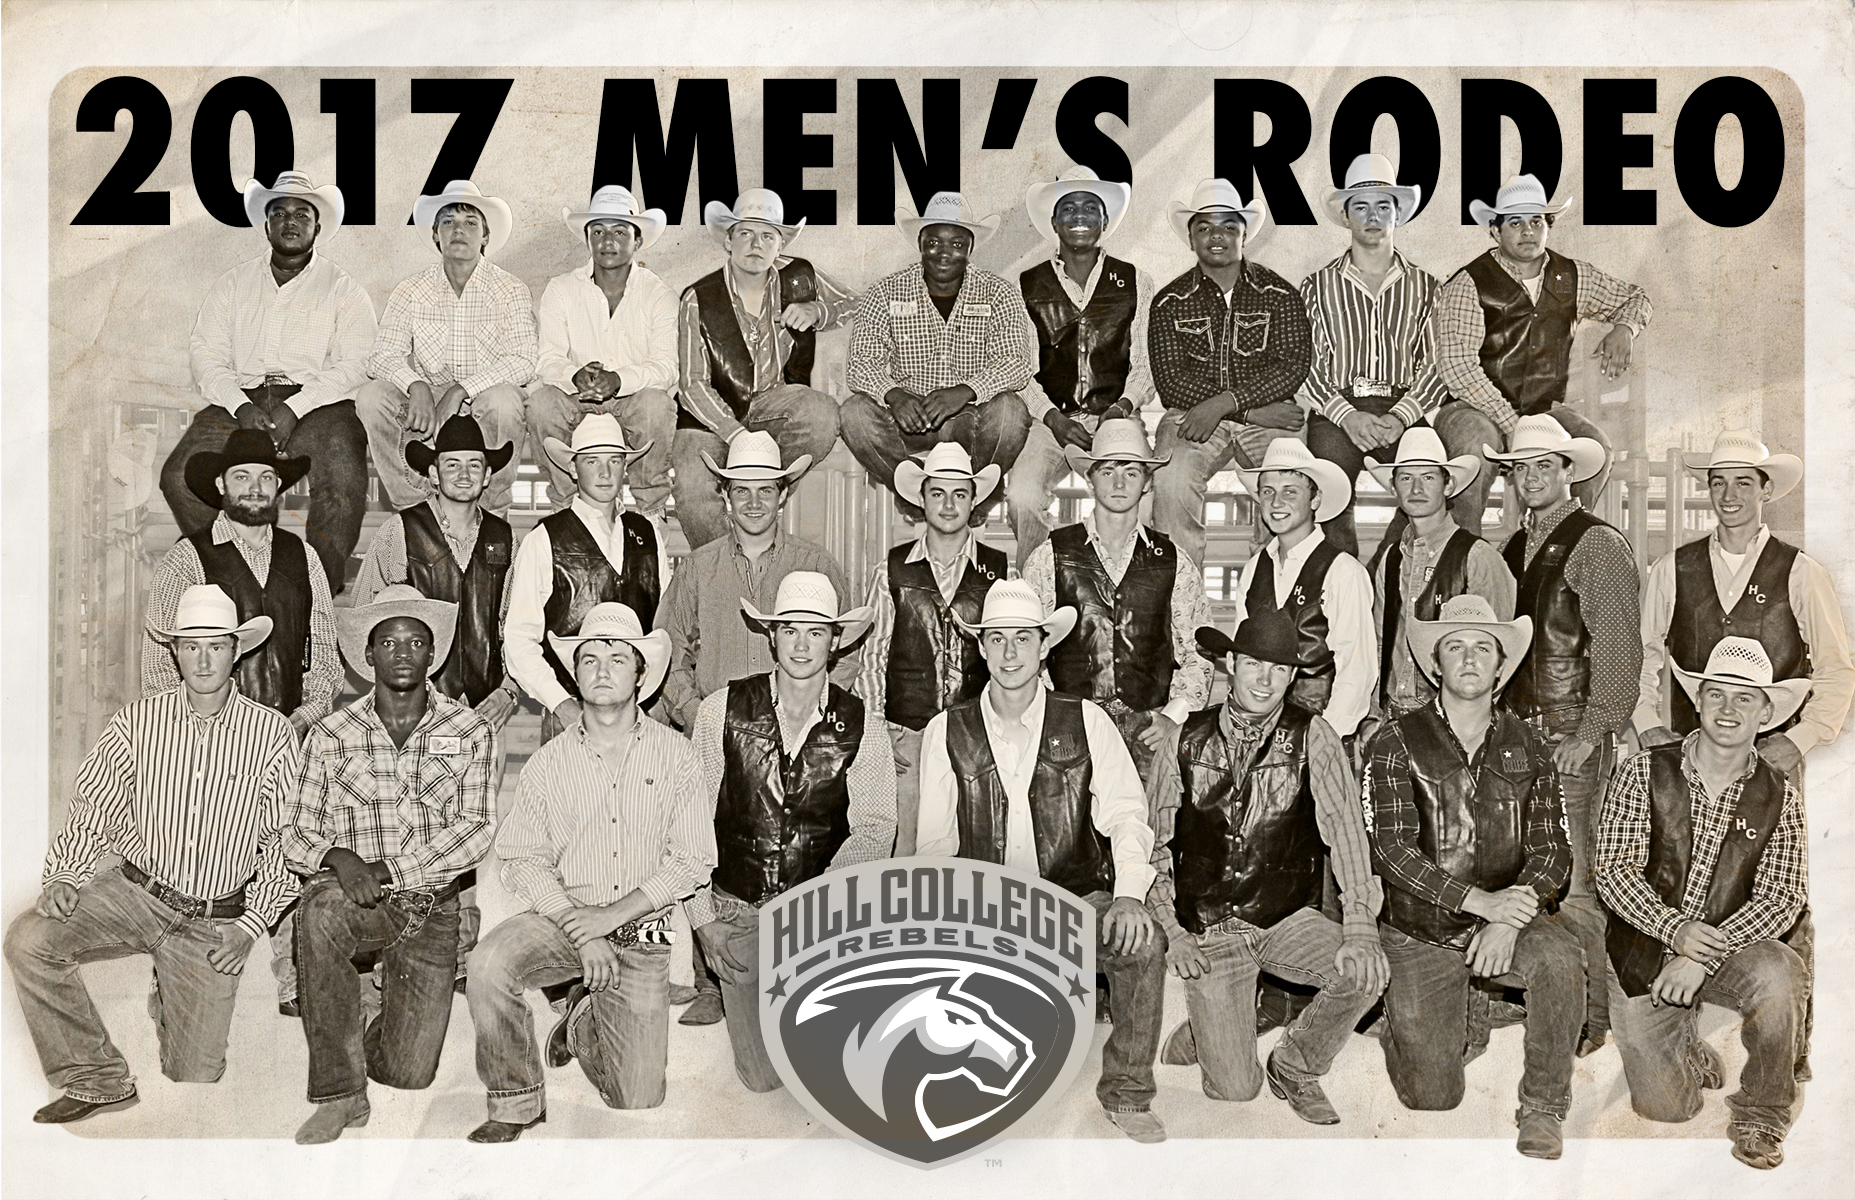 men's rodeo